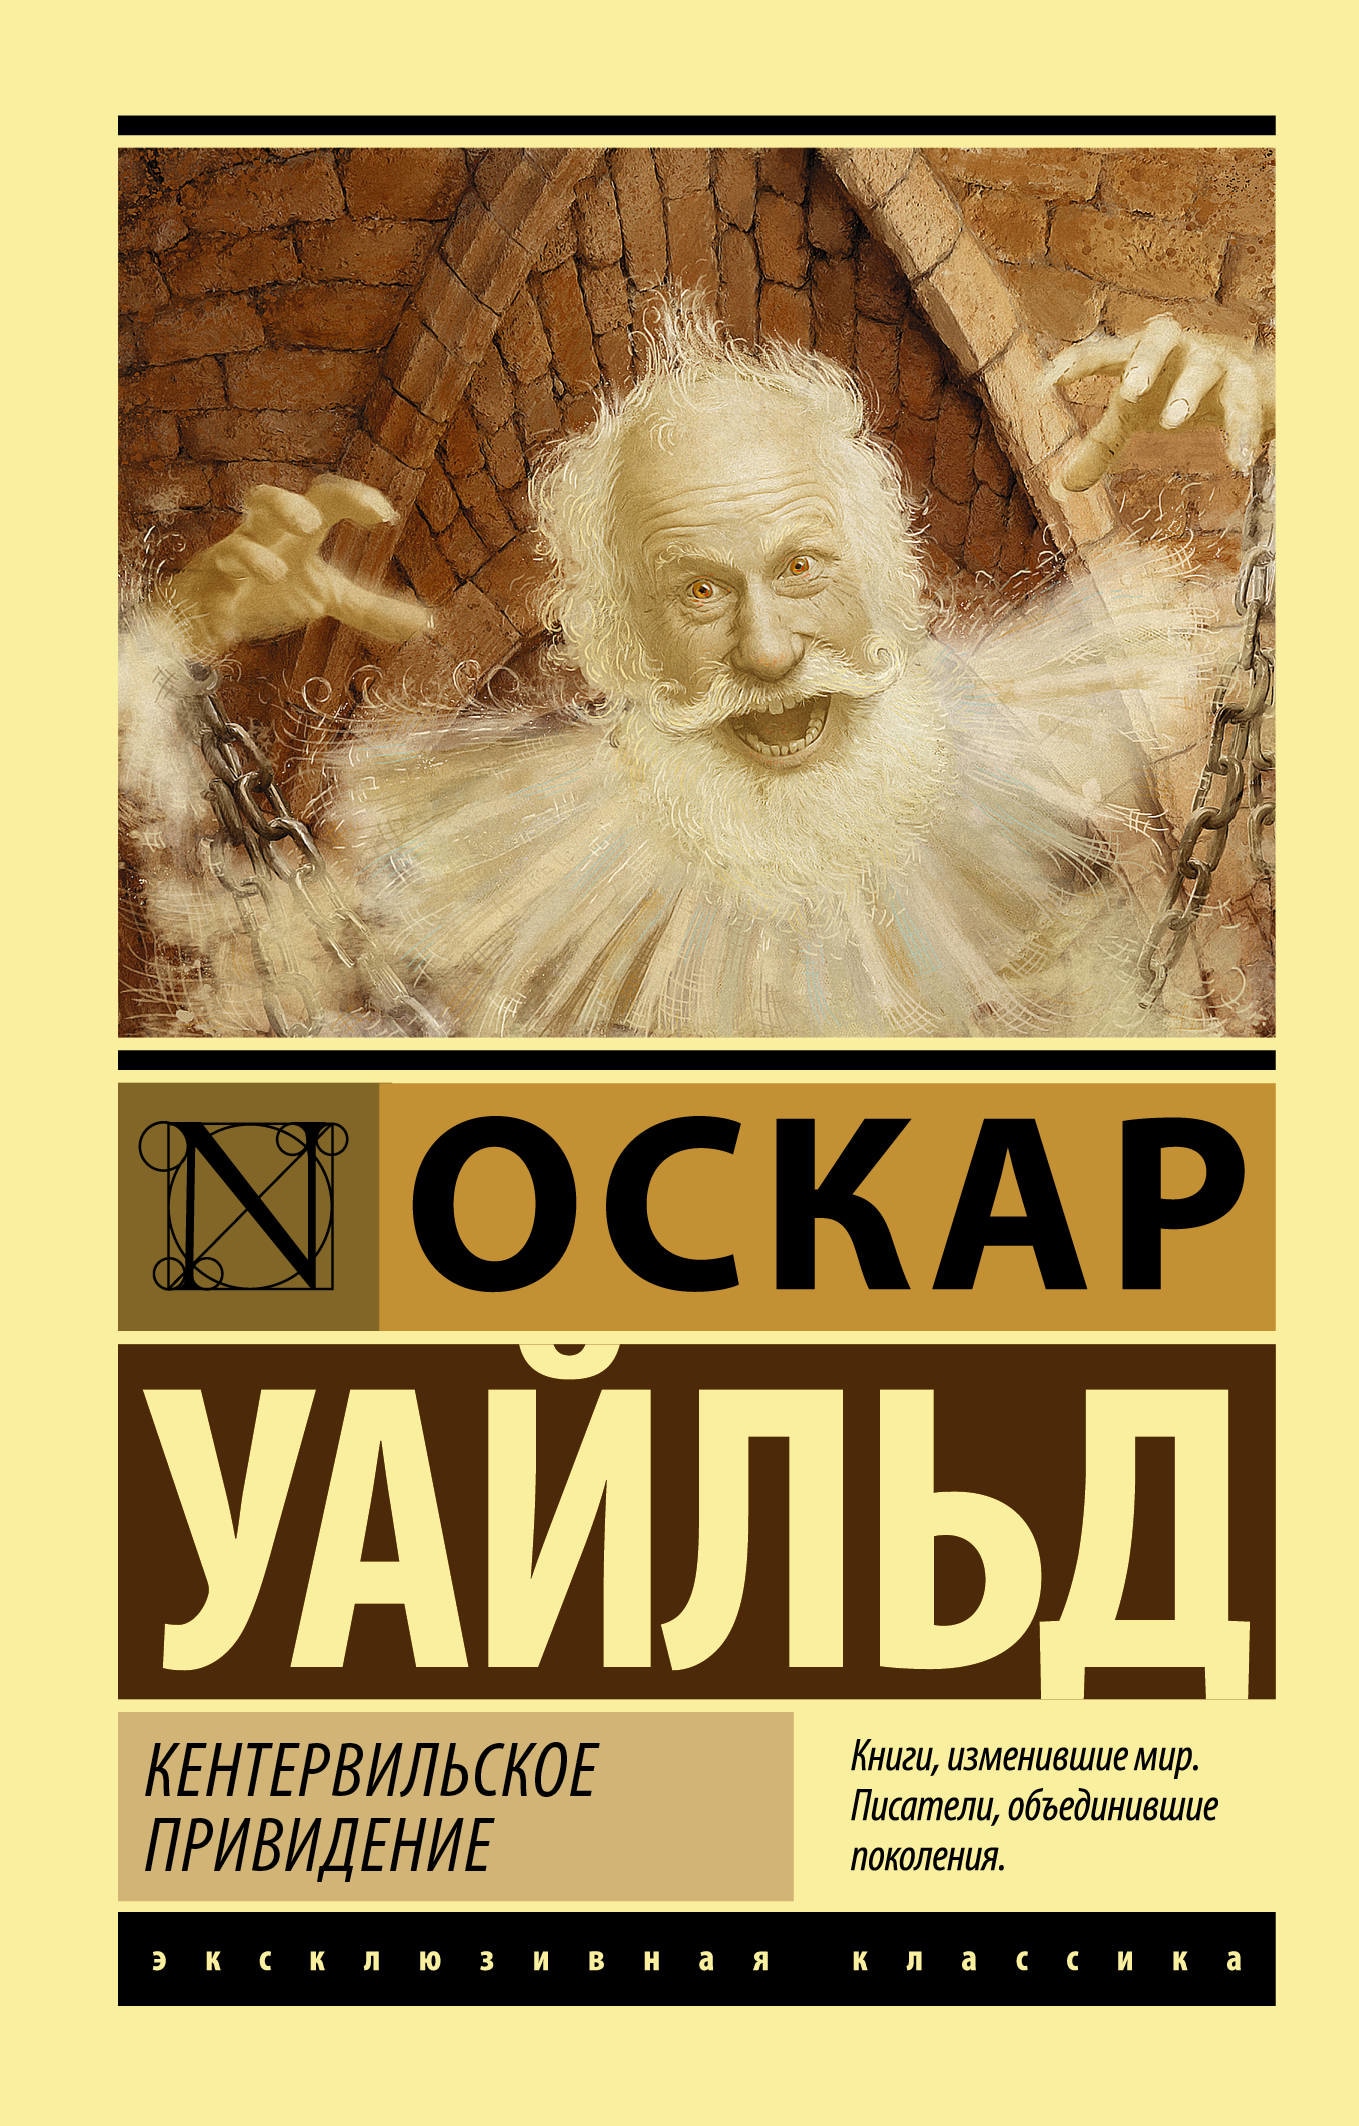 Book “Кентервильское привидение” by Оскар Уайльд — August 30, 2021